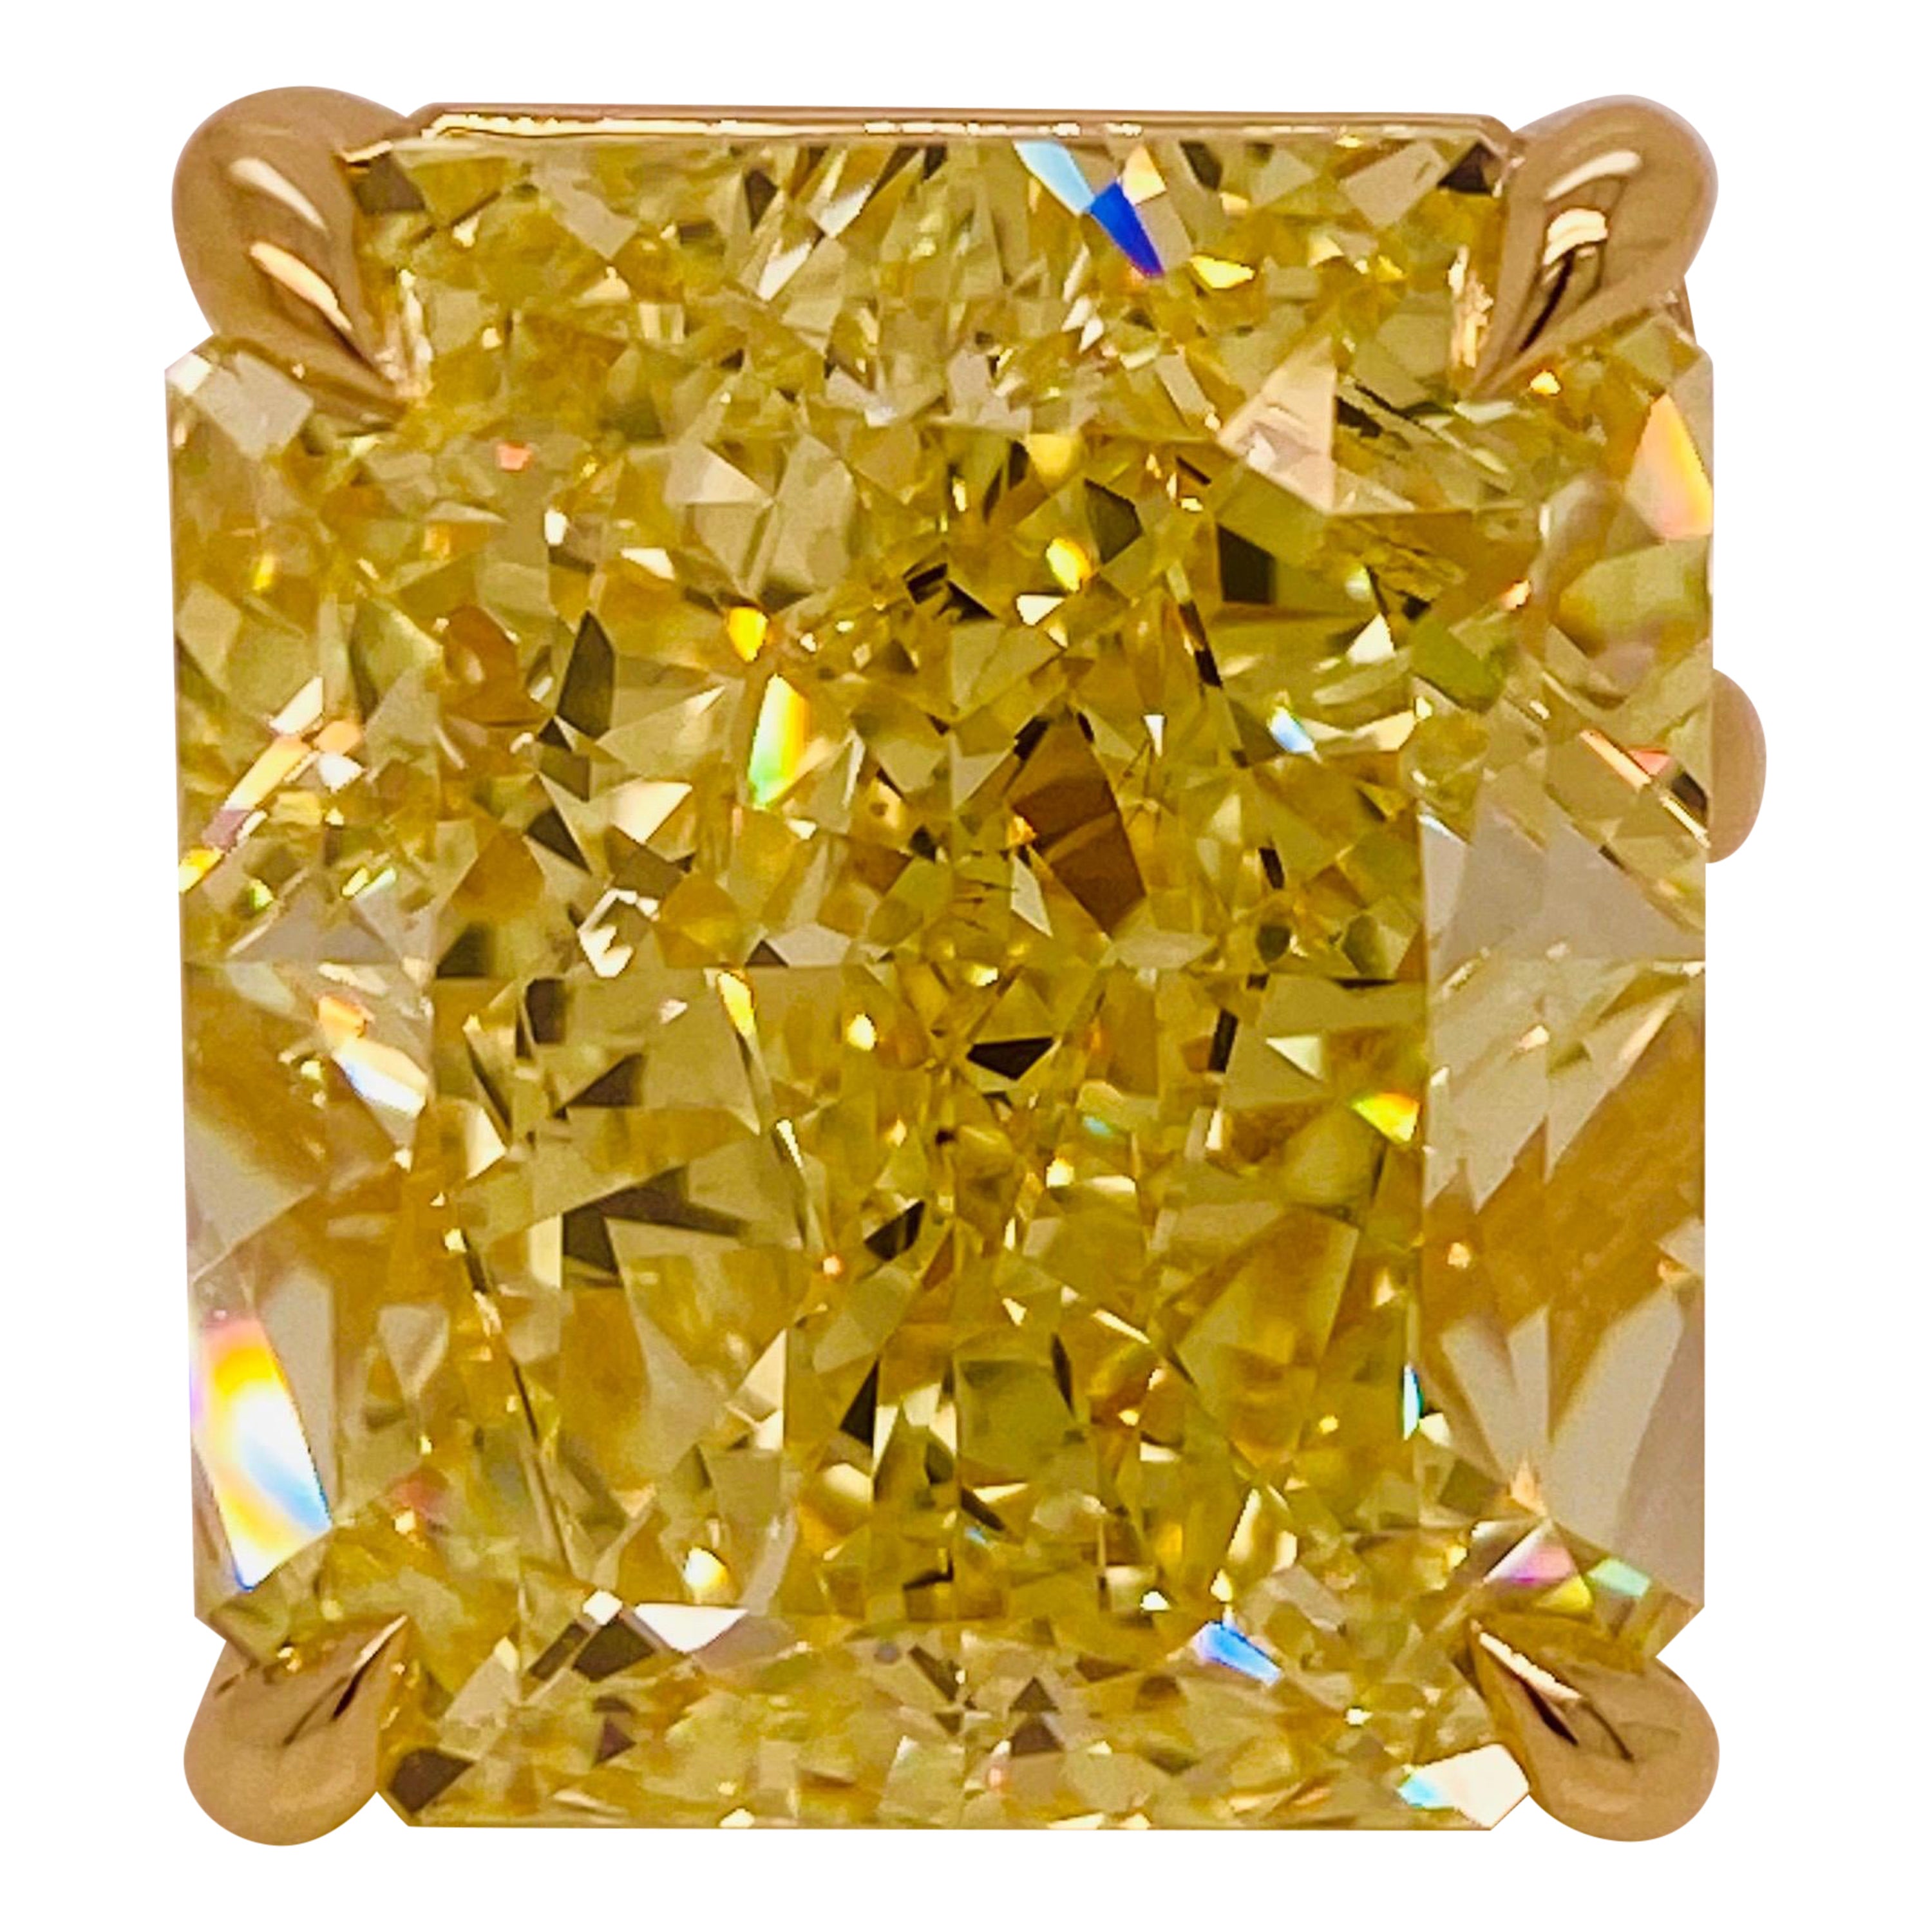 Aus dem Gewölbe des Emilio-Schmuckmuseums,
Ein einzigartiger 41,00ct + Fancy Intense Radiant Yellow Diamant, von überwältigender Farbe und Feuer! Wir haben eine einfache, alltagstaugliche Halterung entworfen. Kann von unserem Team umgestaltet